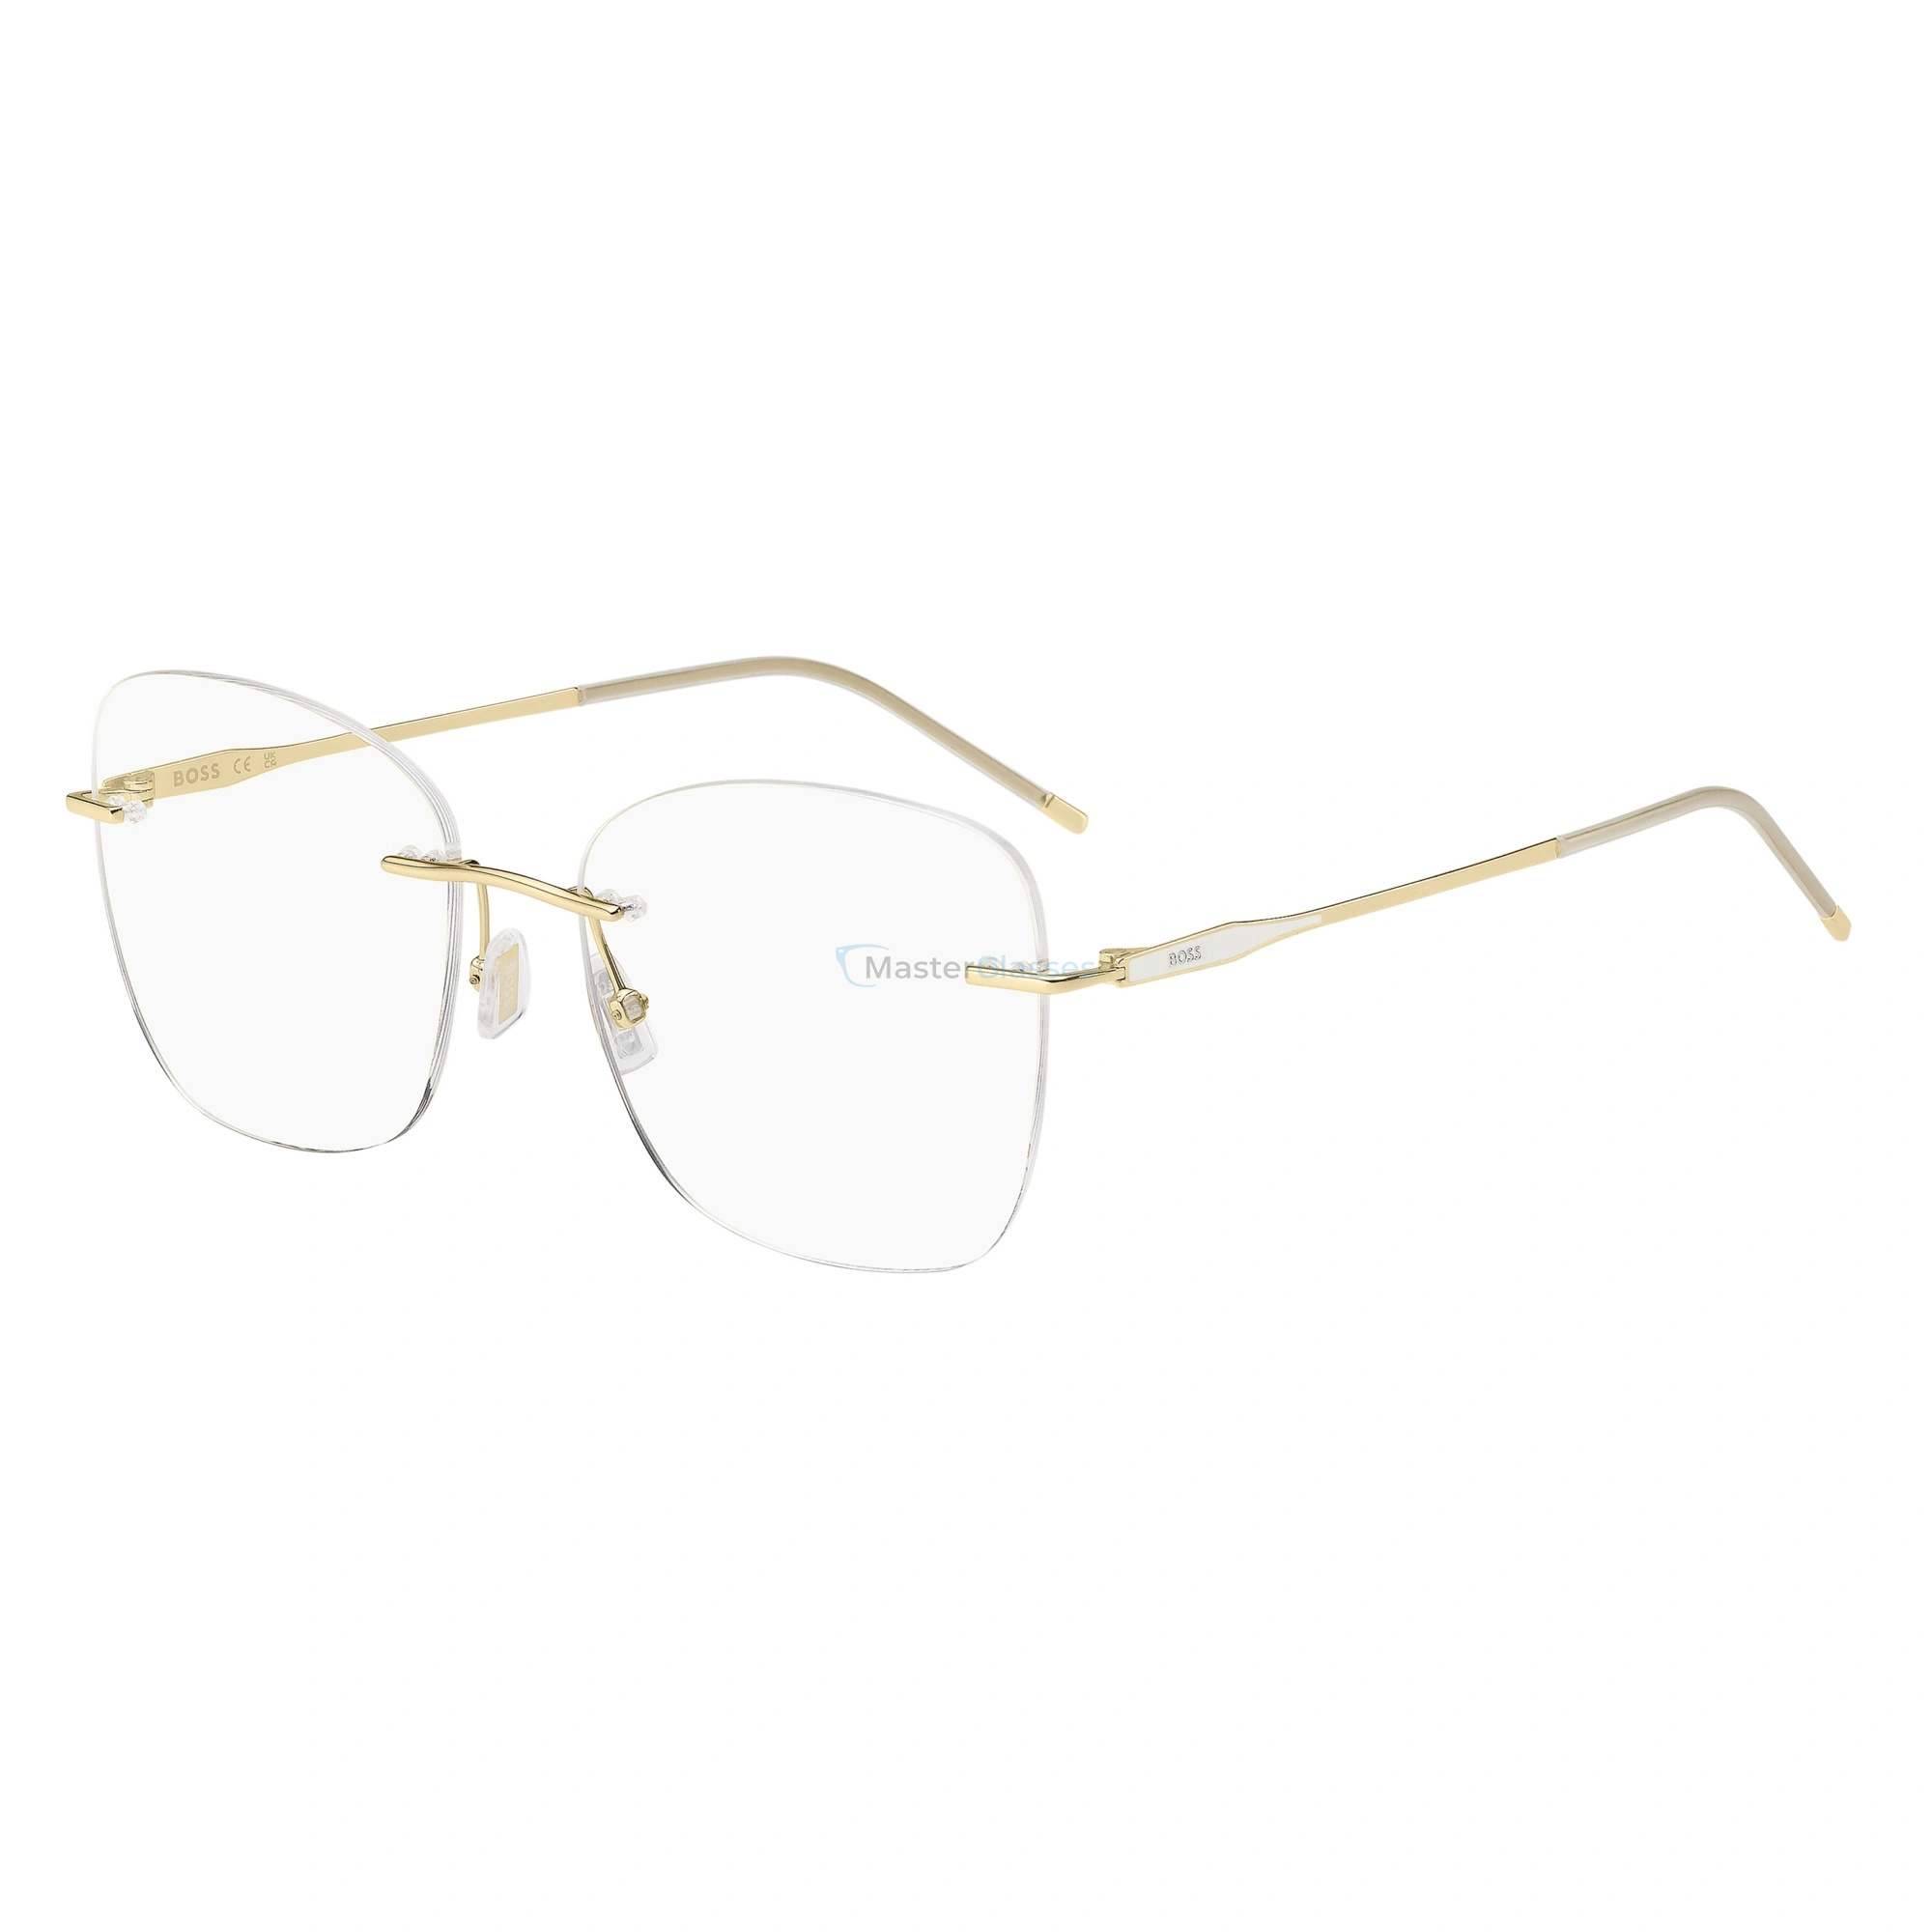 Оправа HUGO BOSS 1667 24S Gold White - купить в оптике MasterGlasses